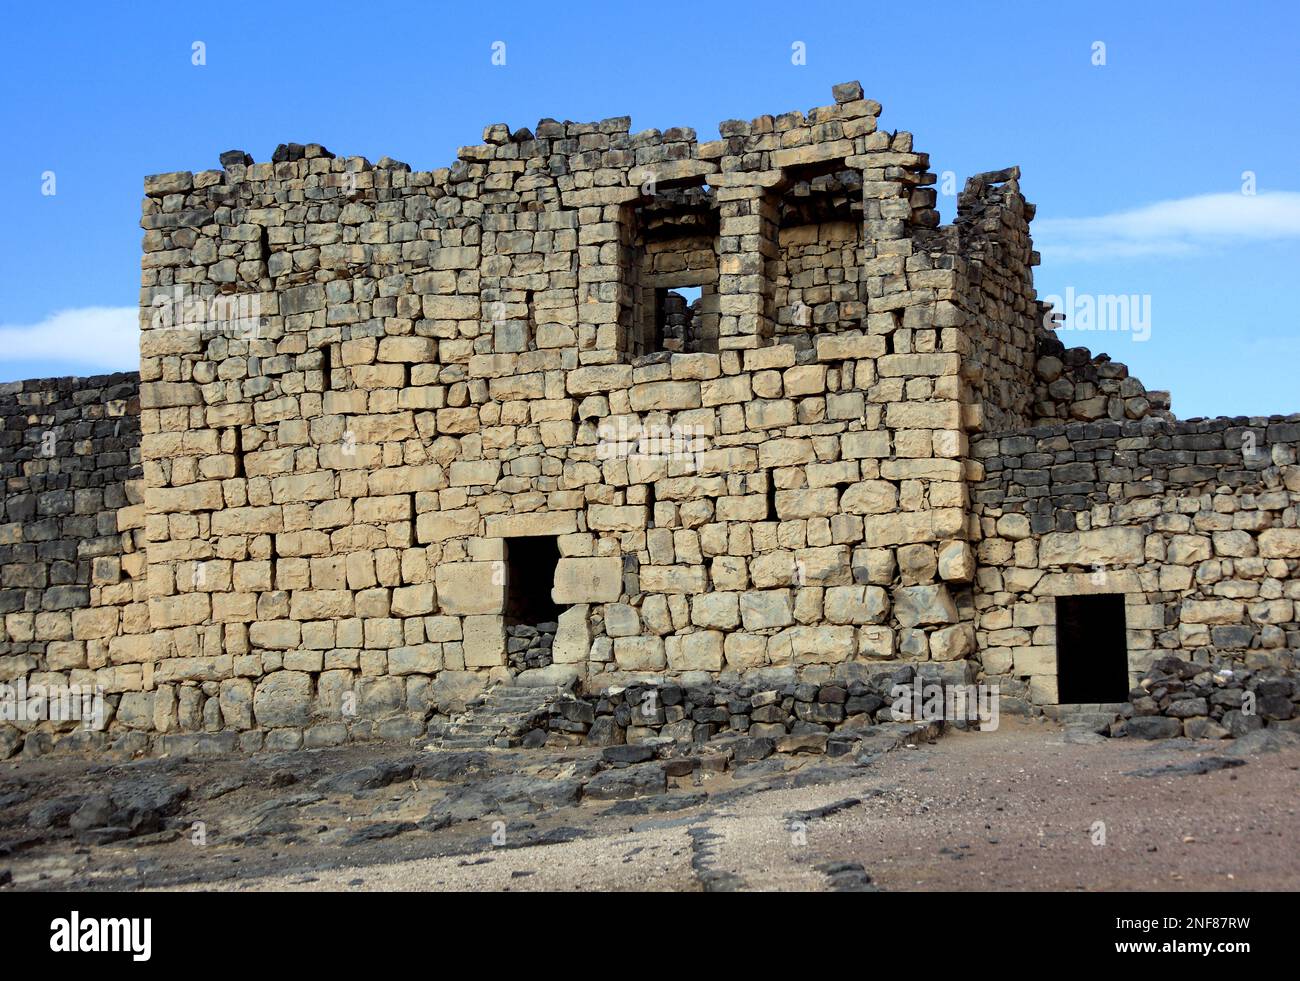 Qasr al Azraq, lateinisch Basianis, Basienis, Oder Amatha, Blaue Festung, ein historisches römisches und byzantinisches Militärlager am vorderen Limes Foto Stock